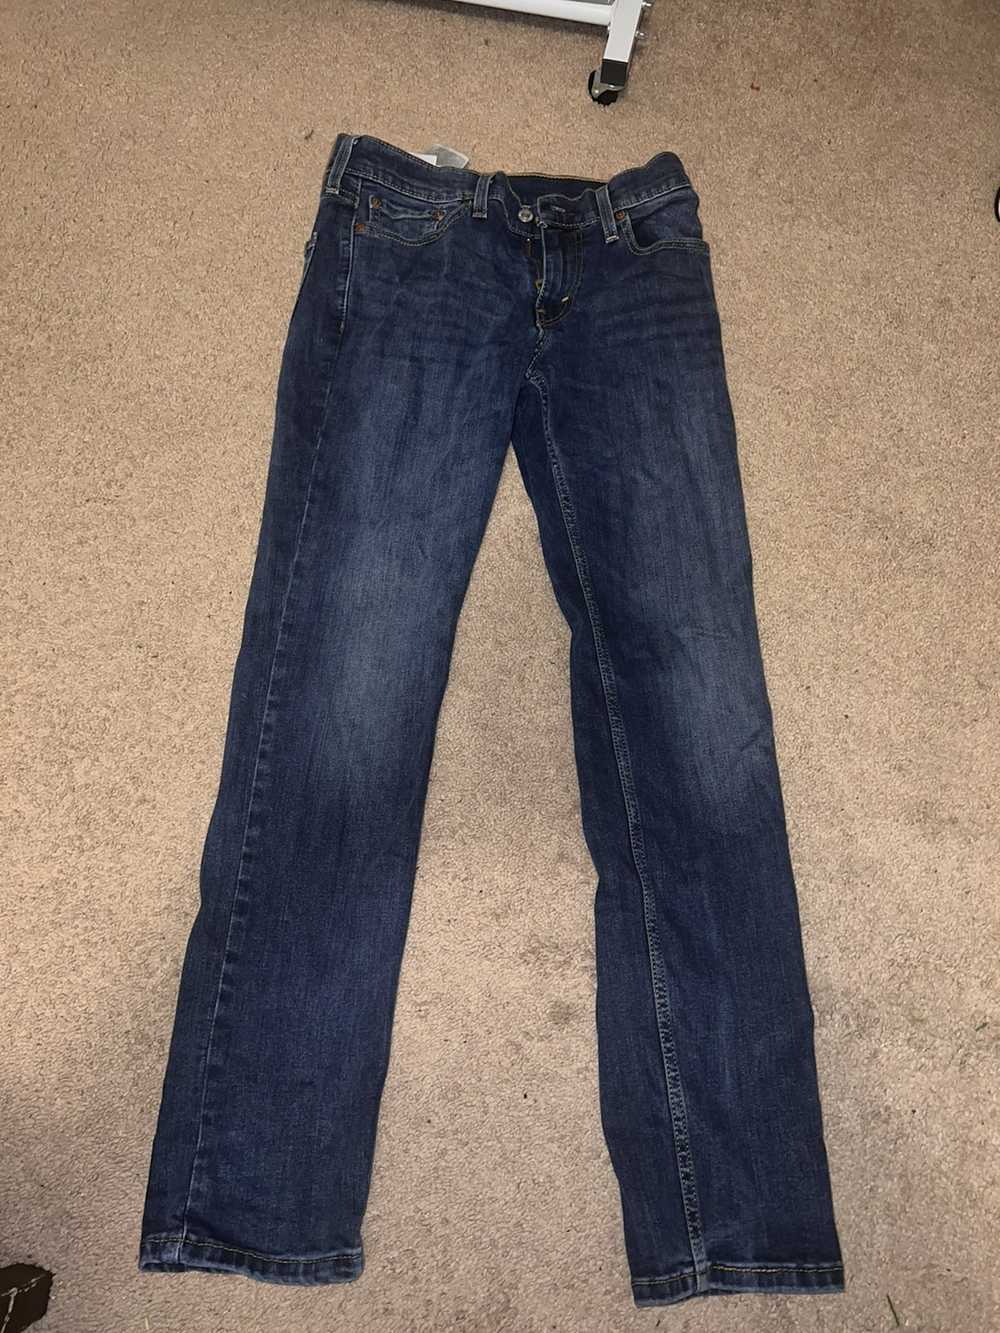 Levi's Levi’s 511 jeans - image 1